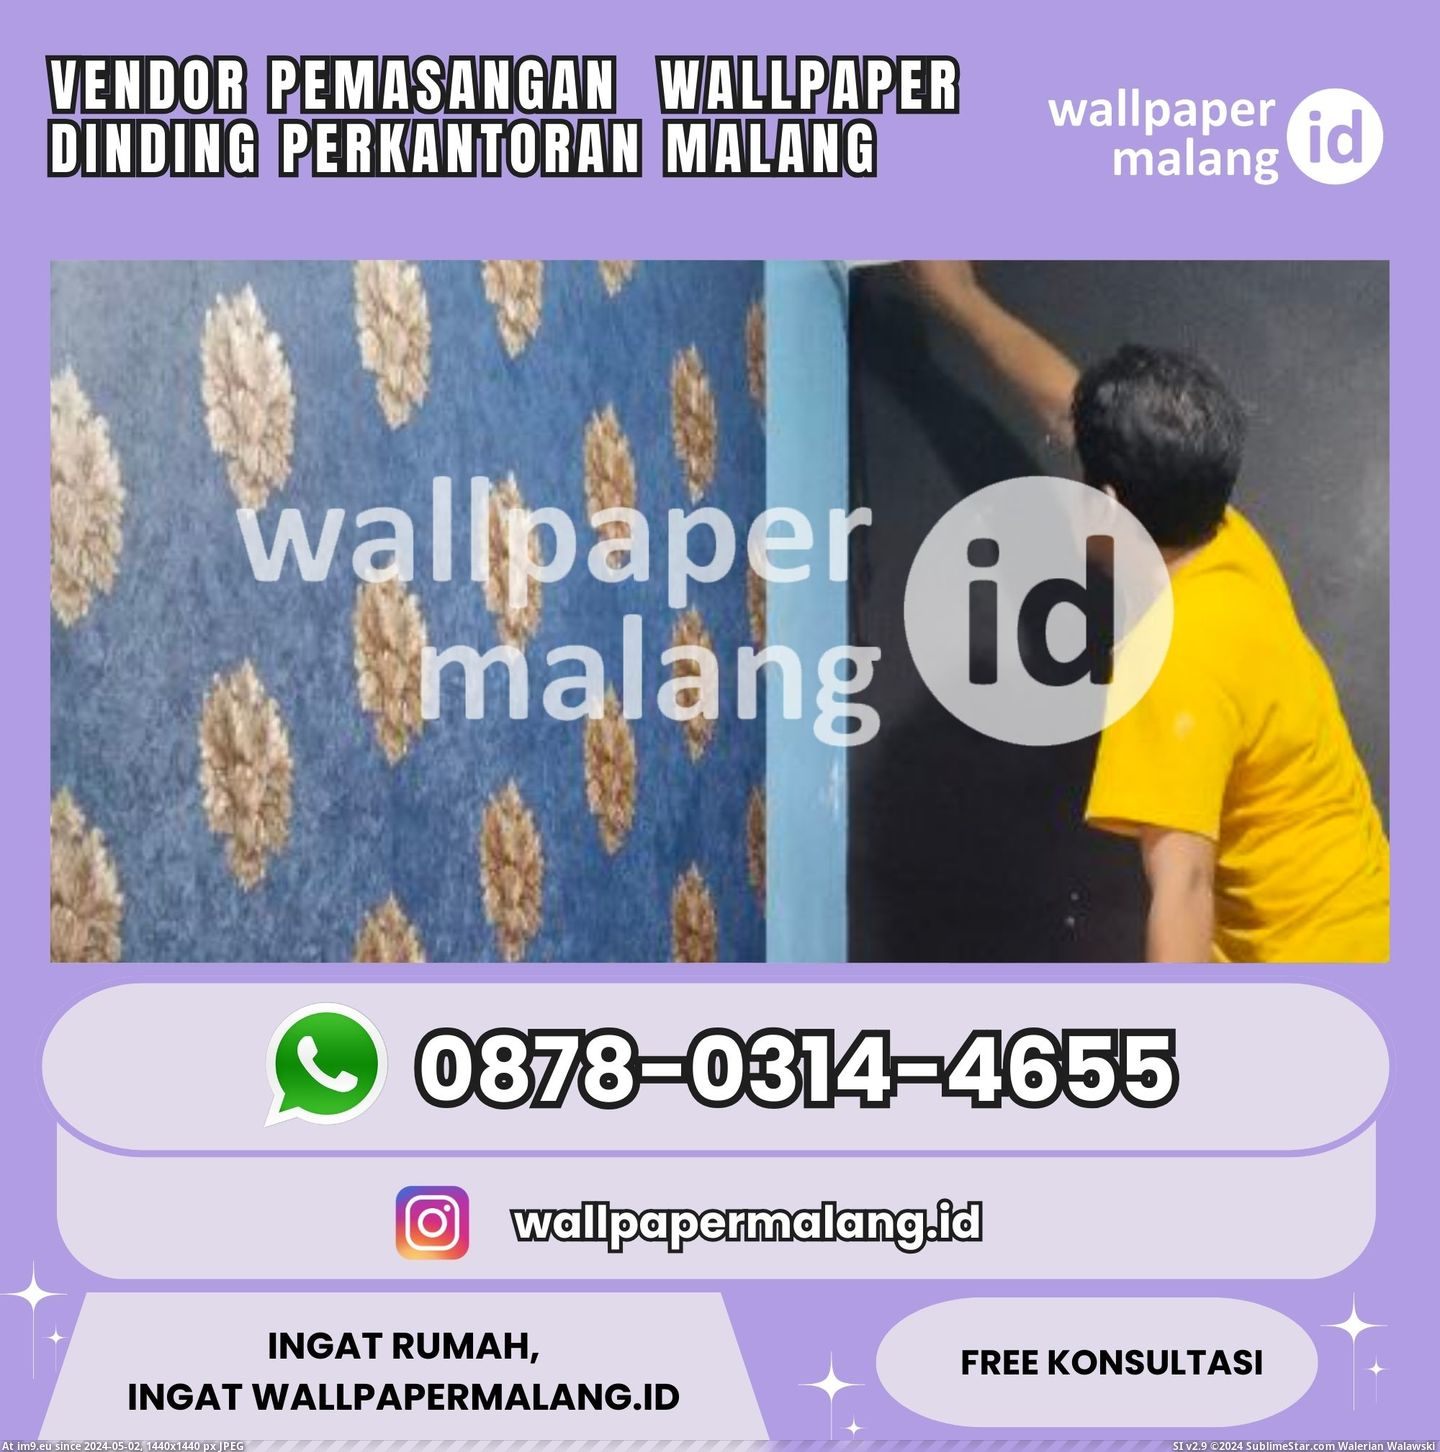 Vendor Pemasangan Wallpaper Dinding Perkantoran Malang (in Instant Upload)